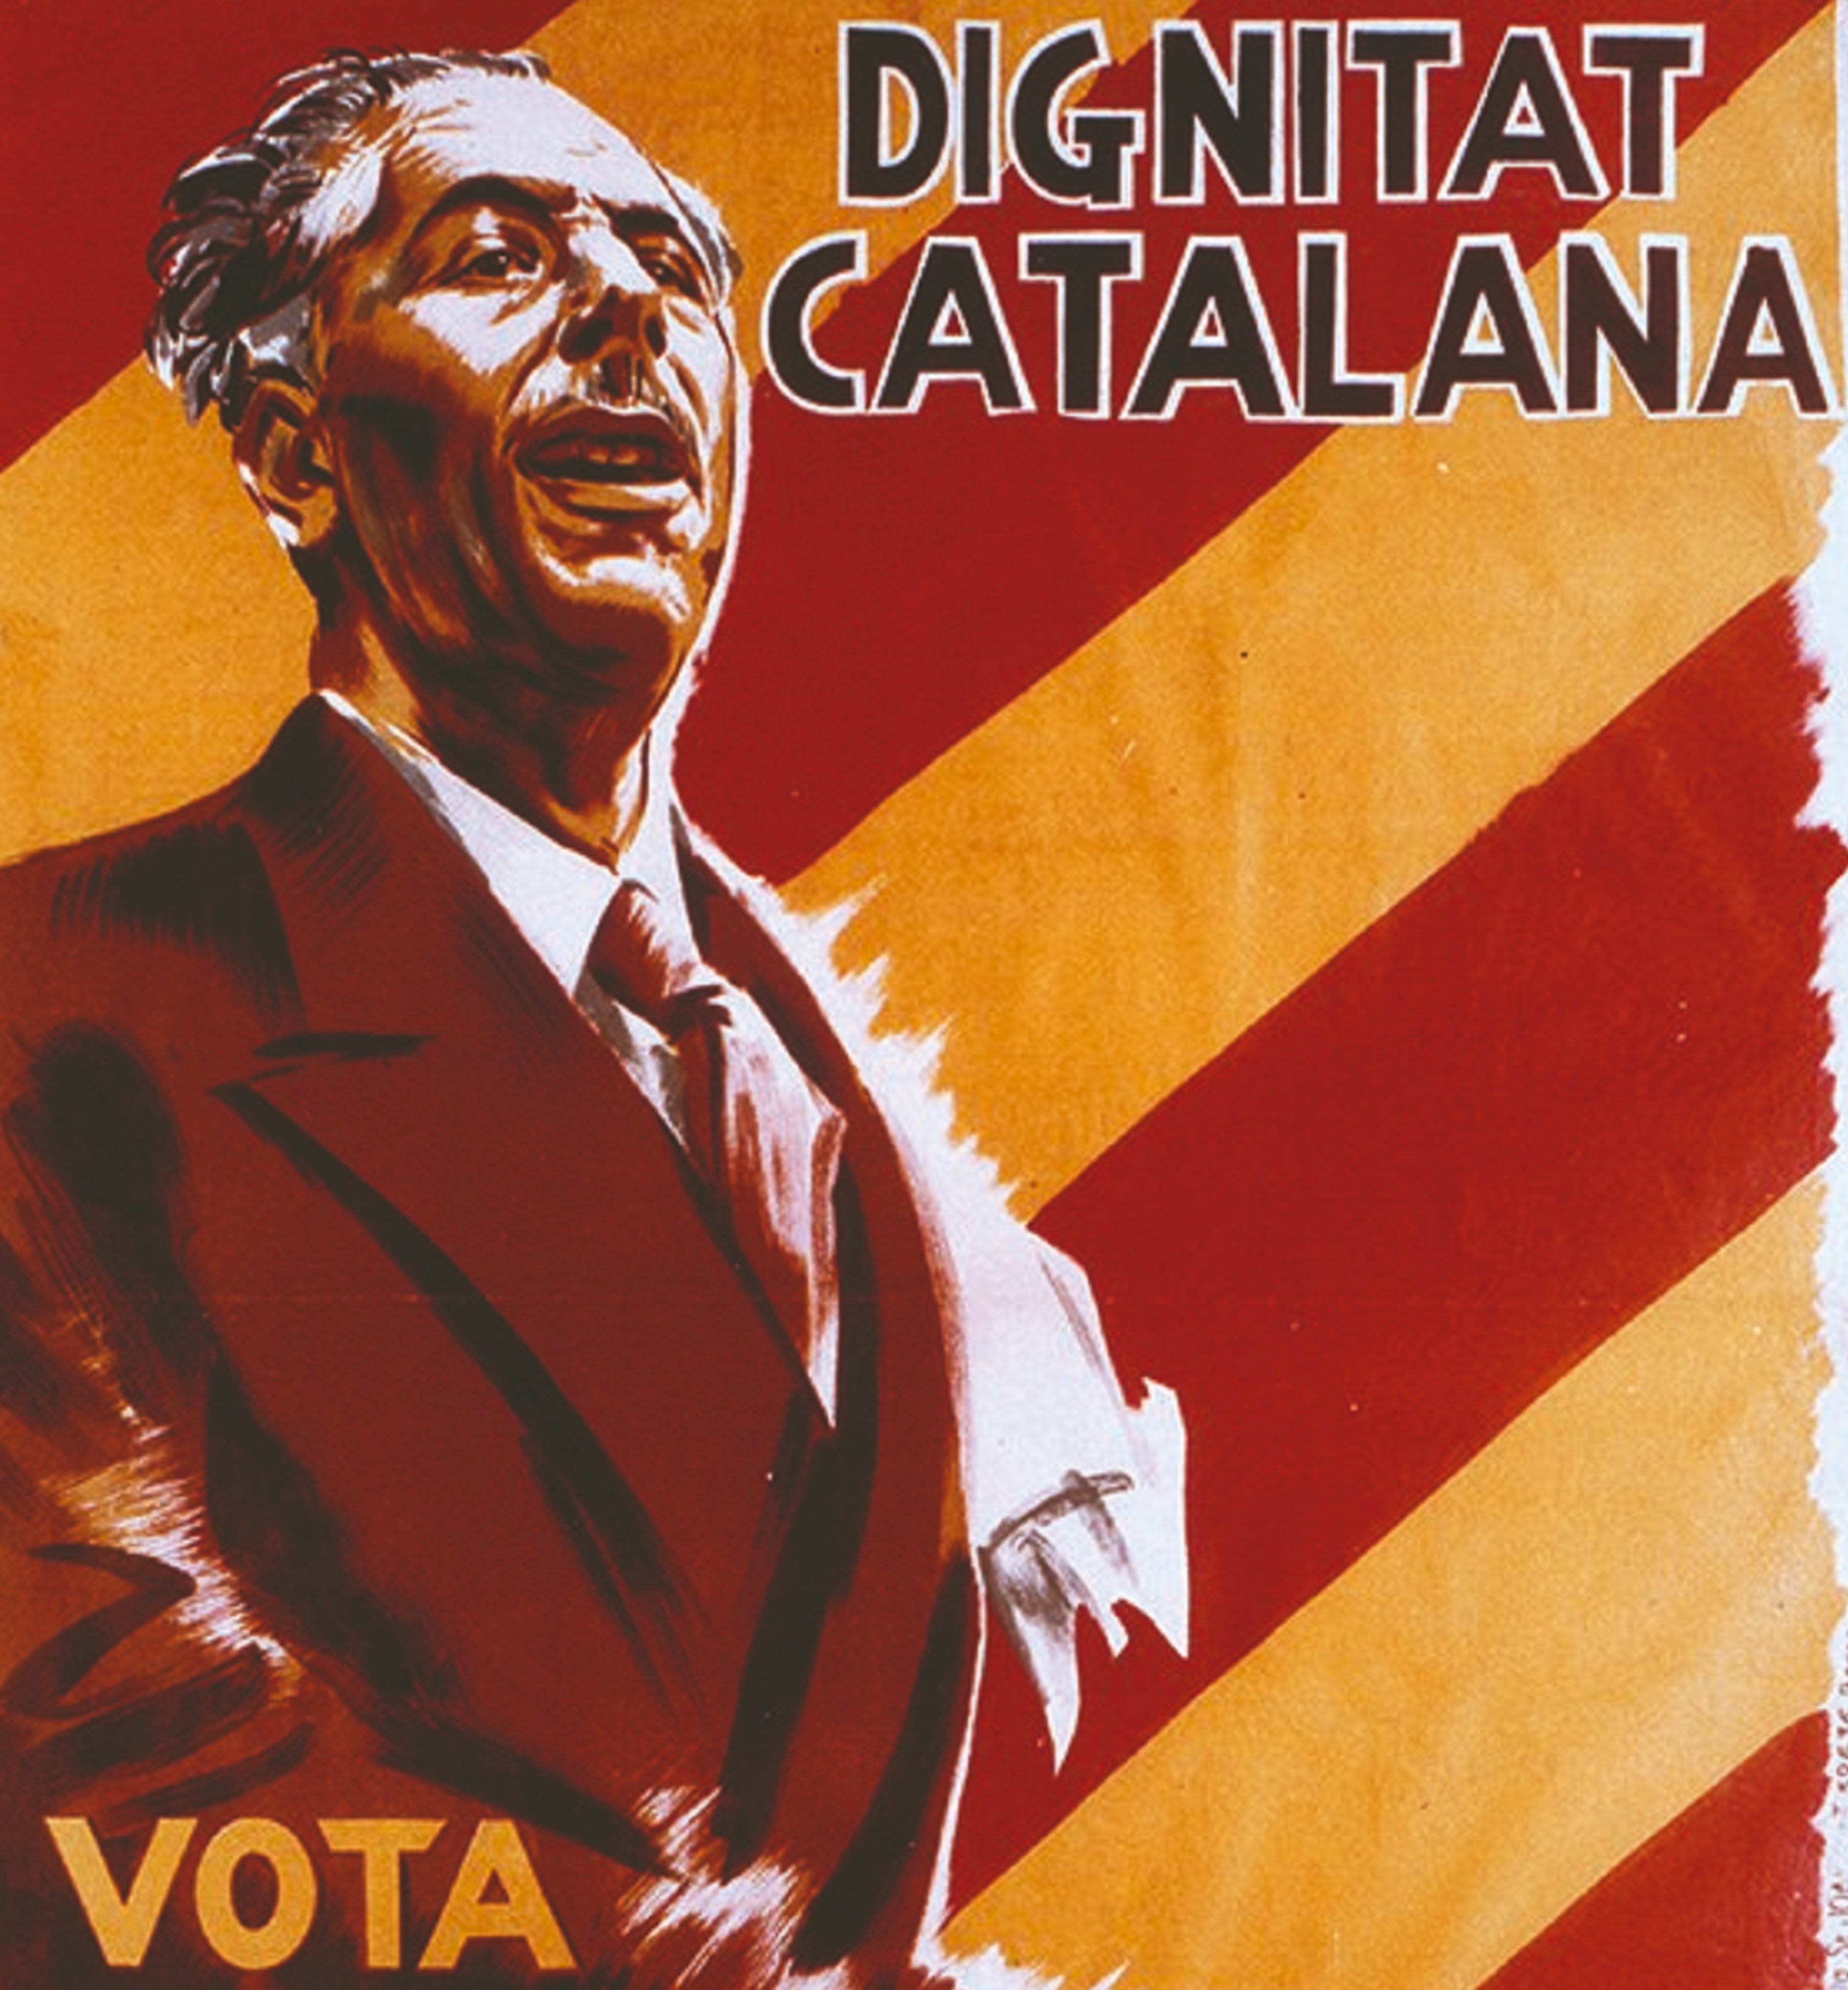 El dia que el catalanisme va votar per dignitat